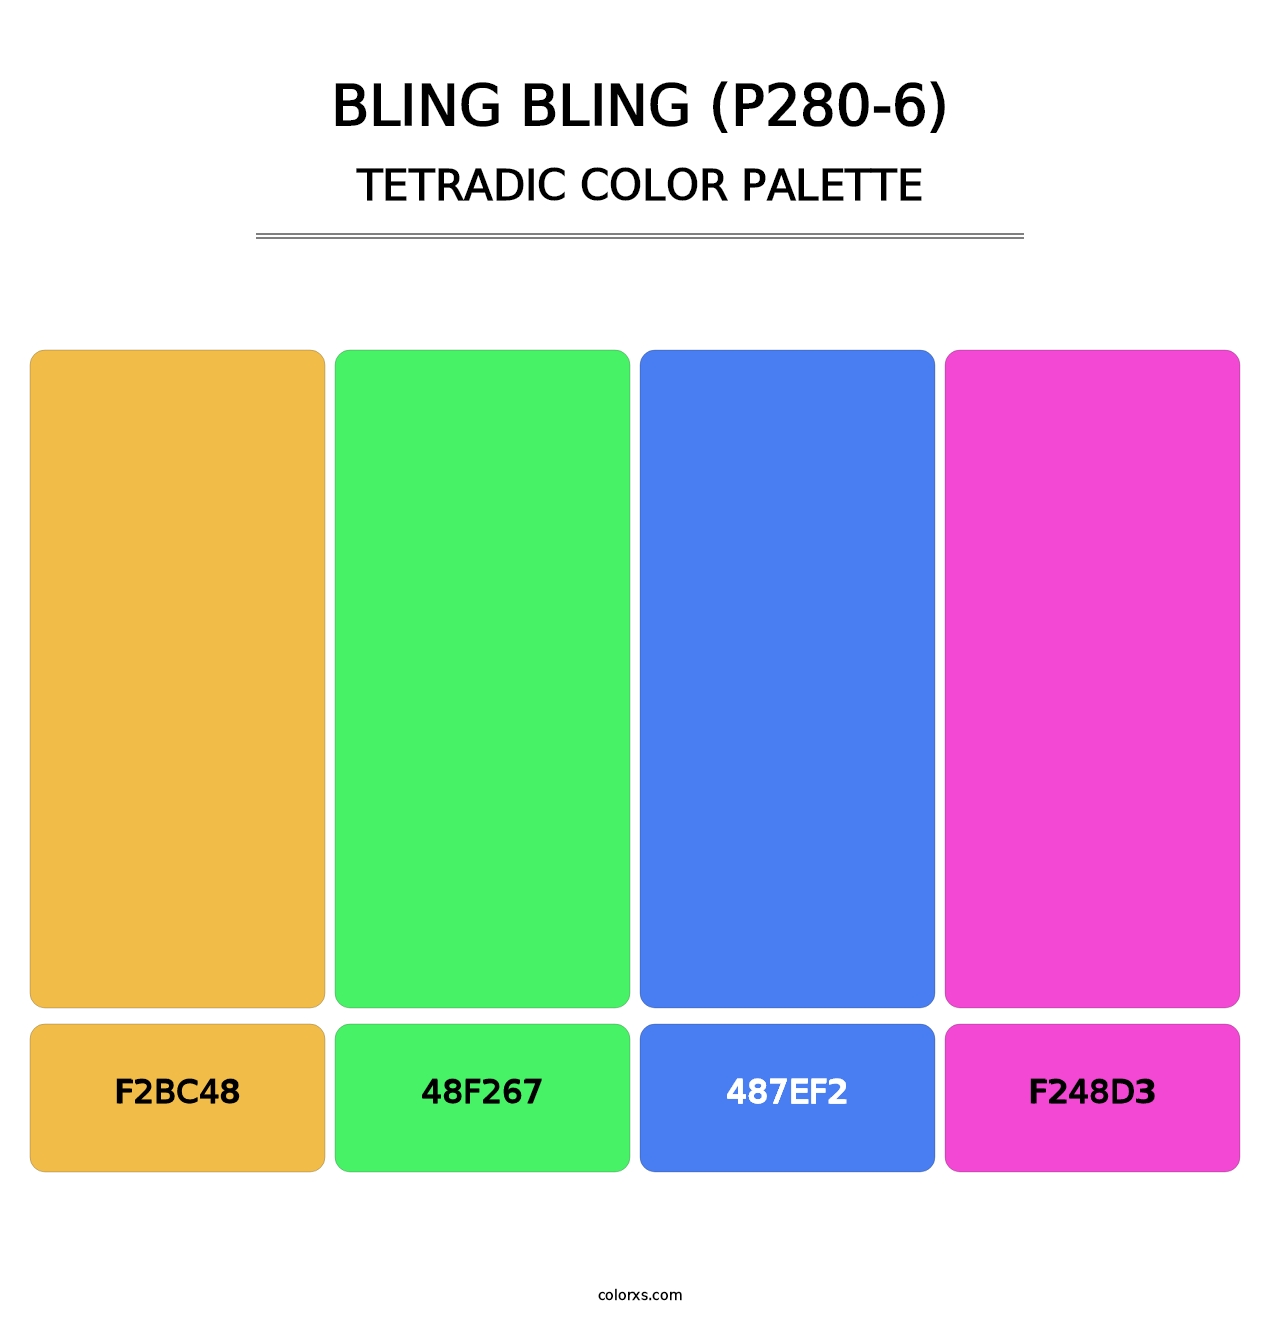 Bling Bling (P280-6) - Tetradic Color Palette